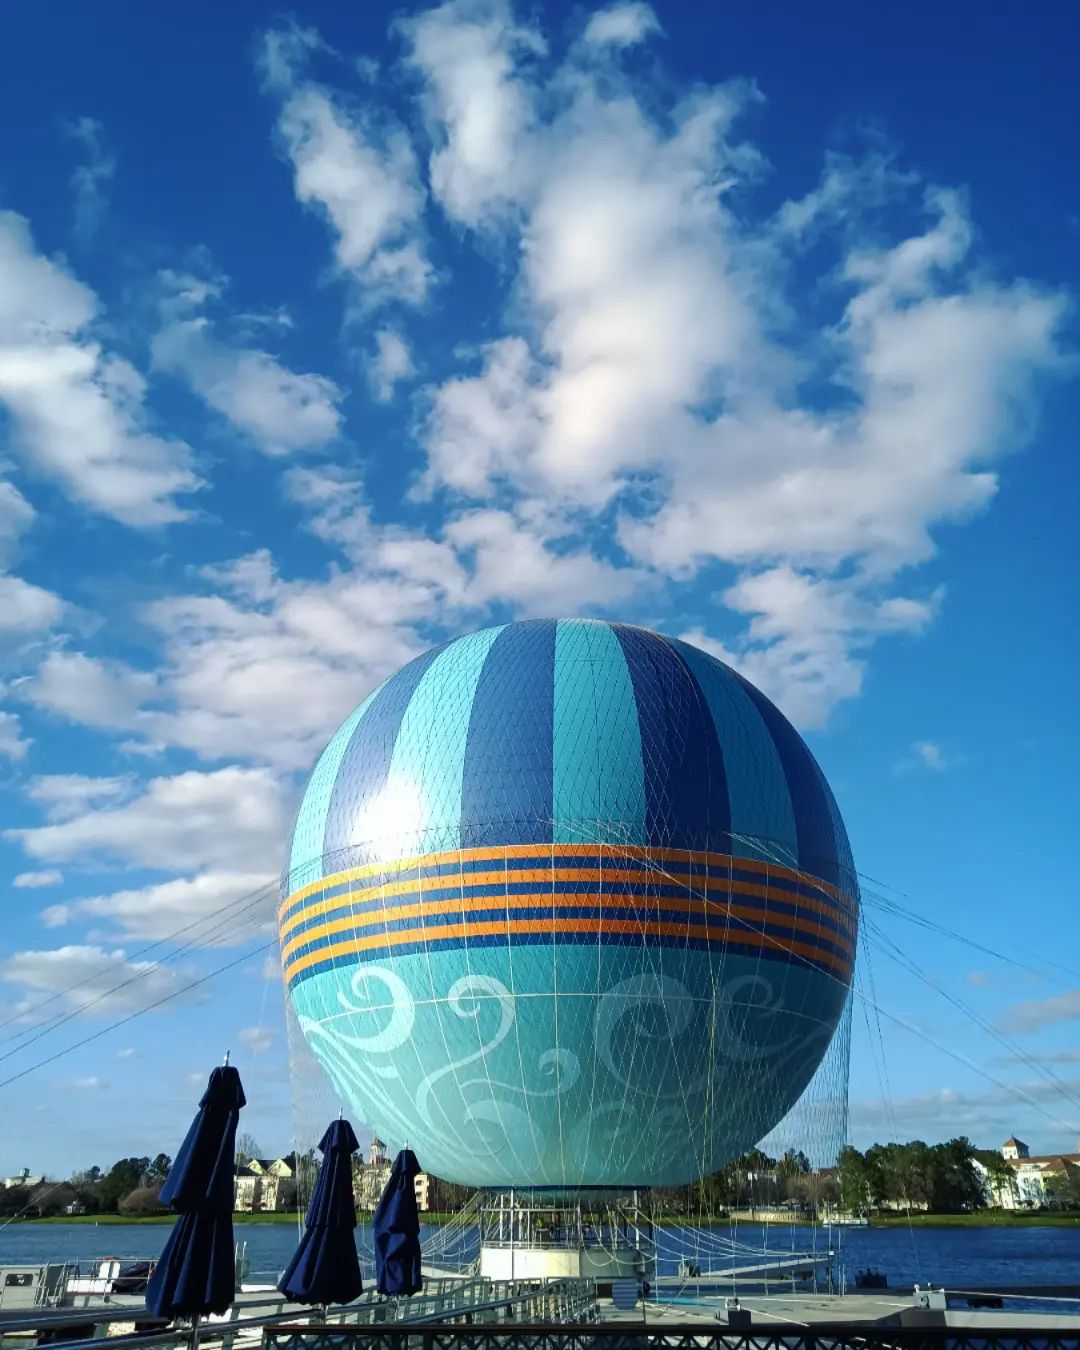 Aerophile - Disney Springs Ballon